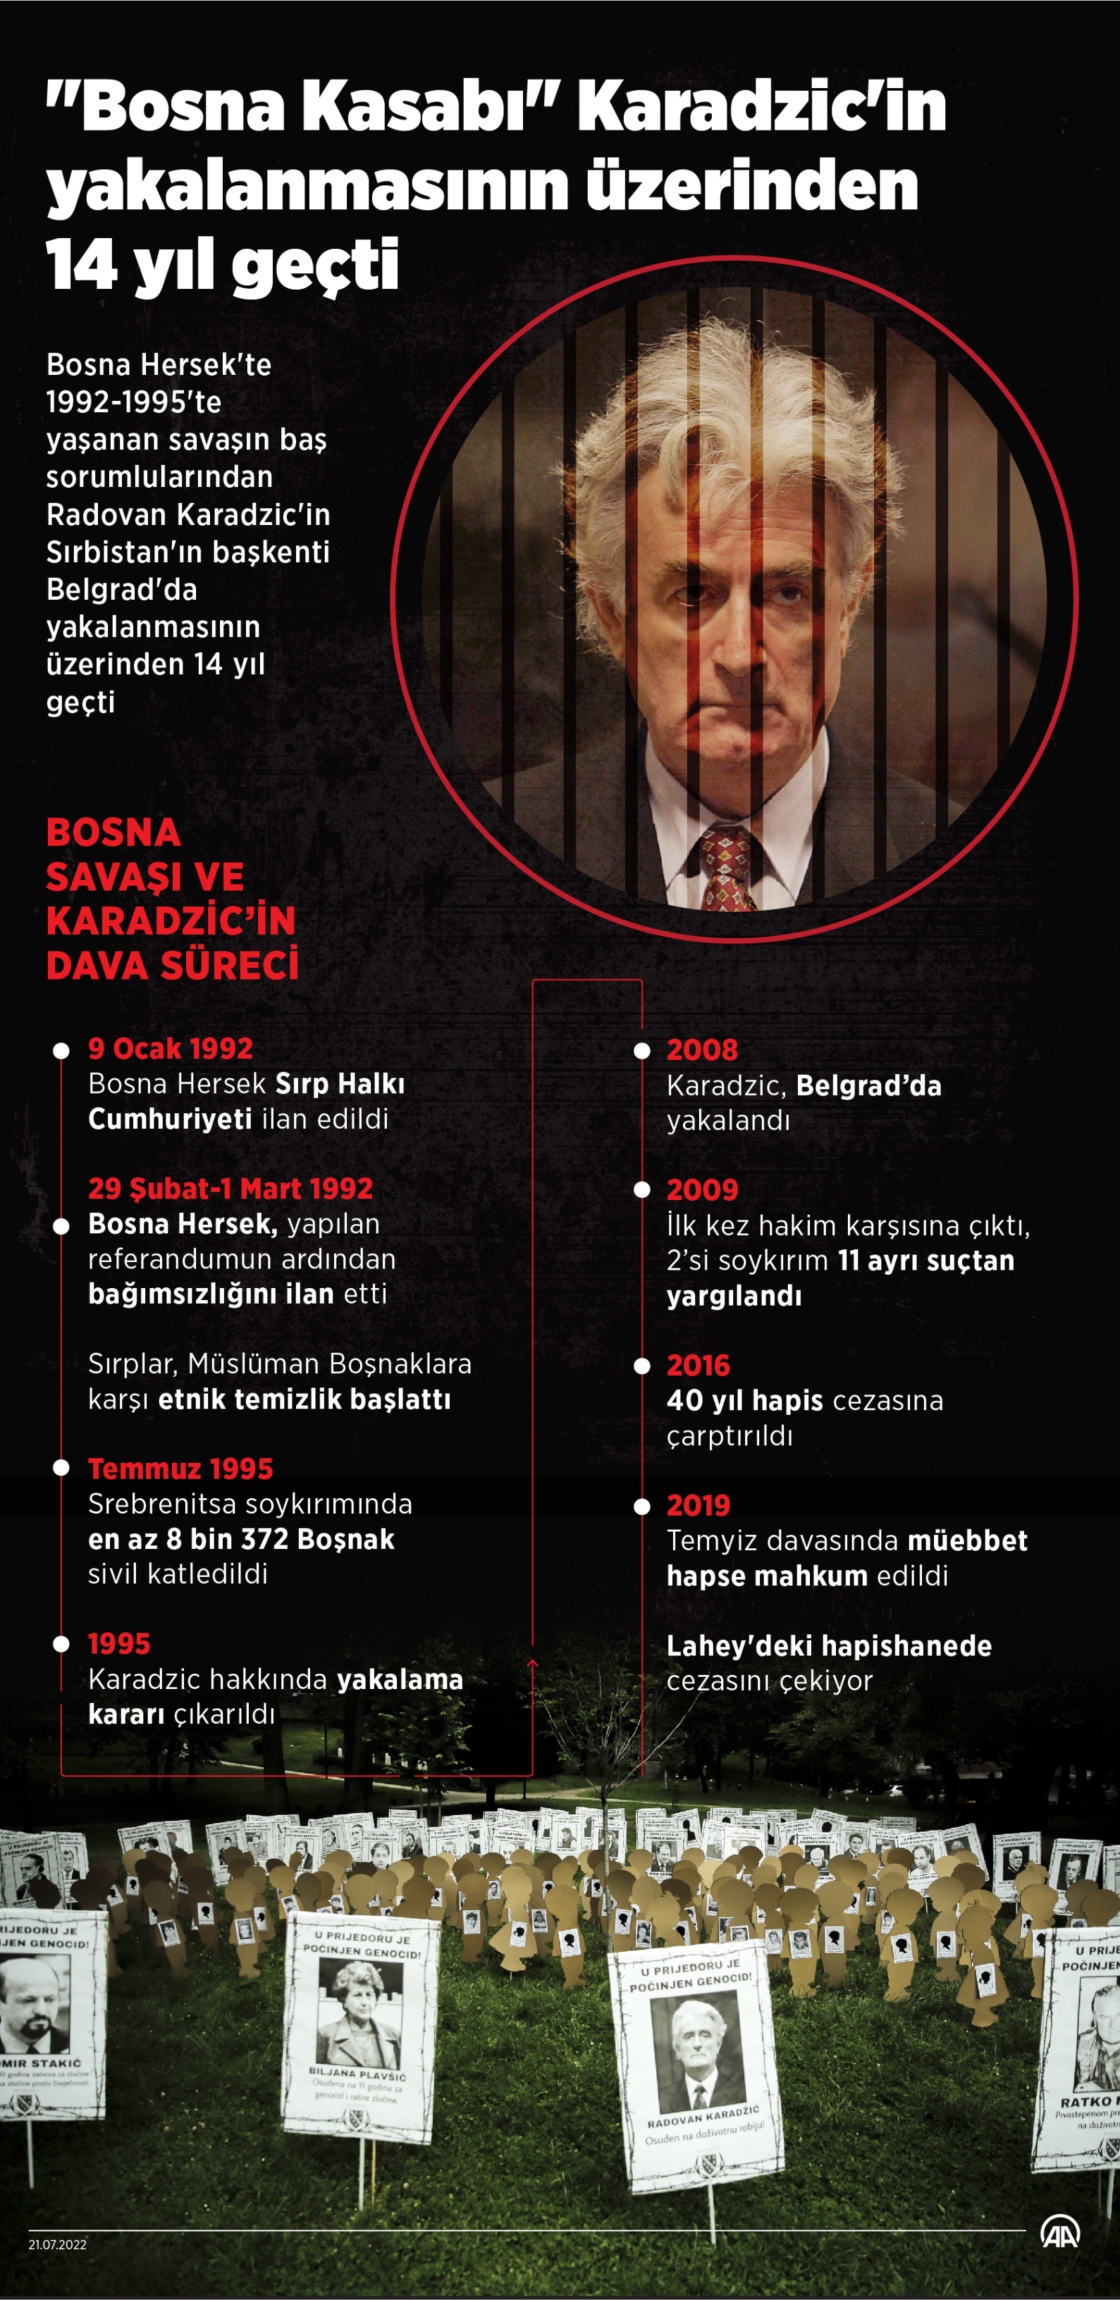 "Bosna Kasabı" olarak bilinen Karadzic'in yakalanmasının üzerinden 14 yıl geçti